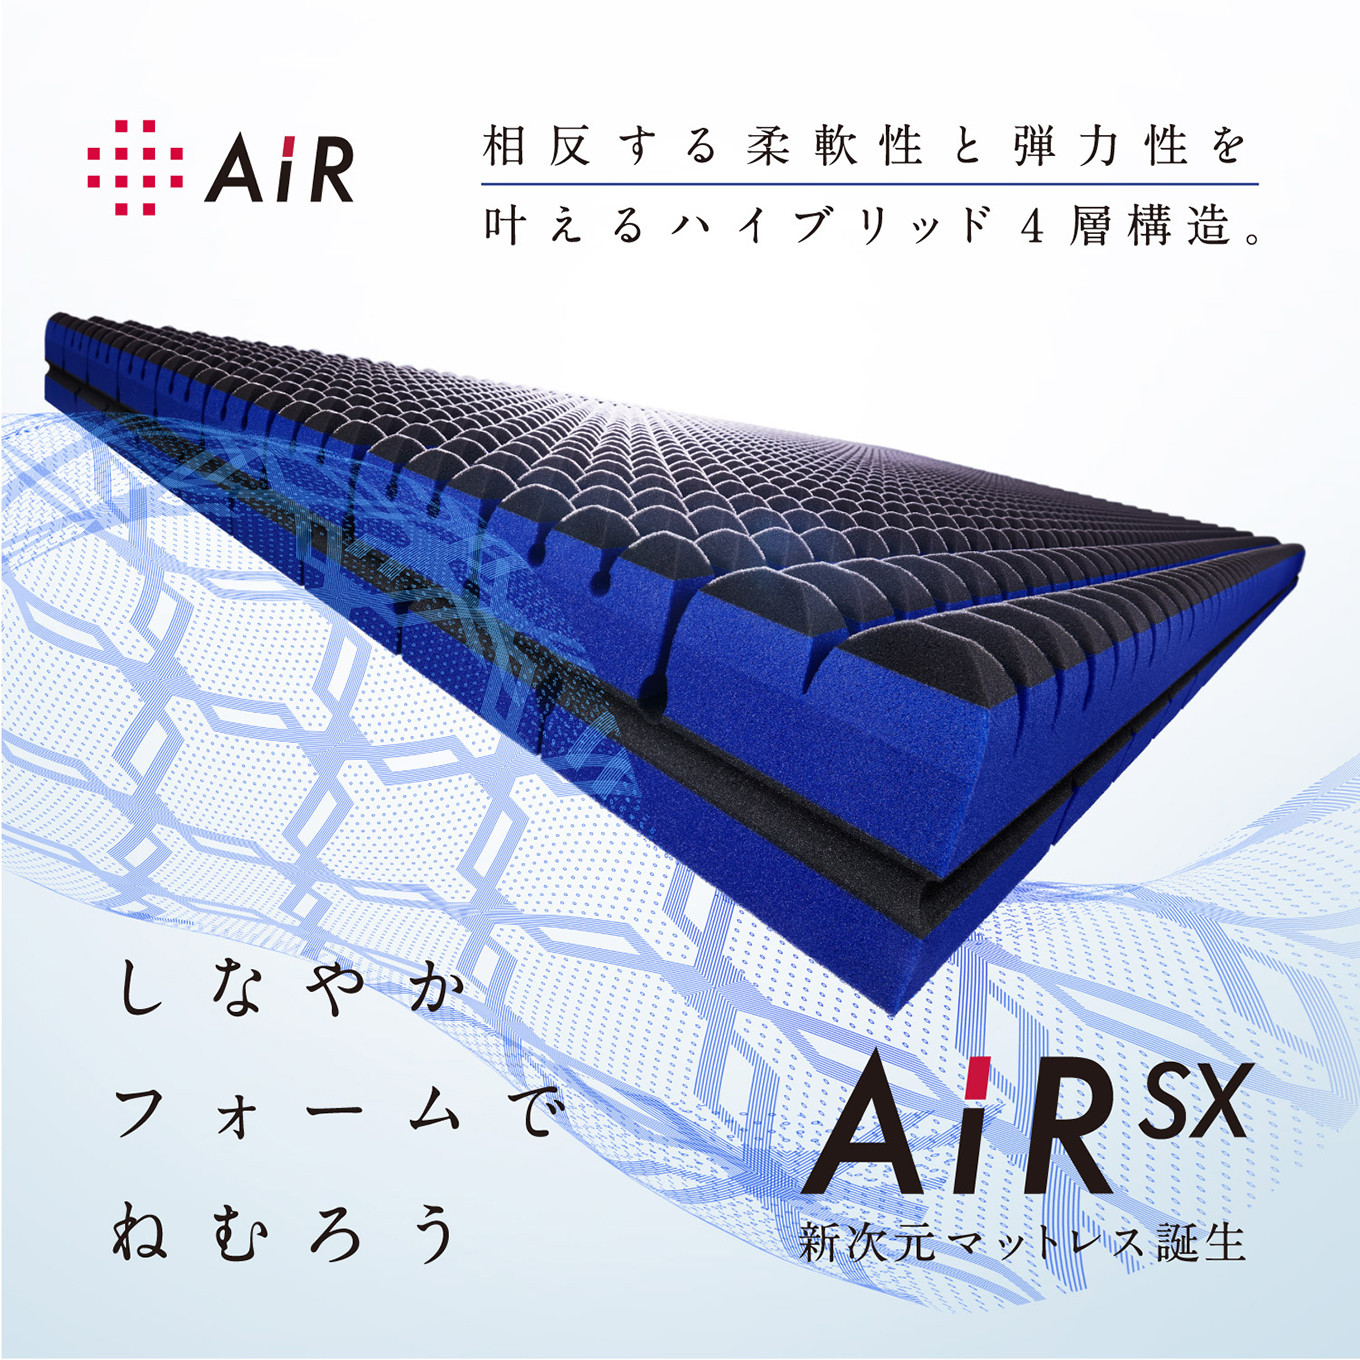 西川AiR SX エアー 大谷翔平 セミダブル ベッドマットレス 厚さ14cm付属品保証書はありません